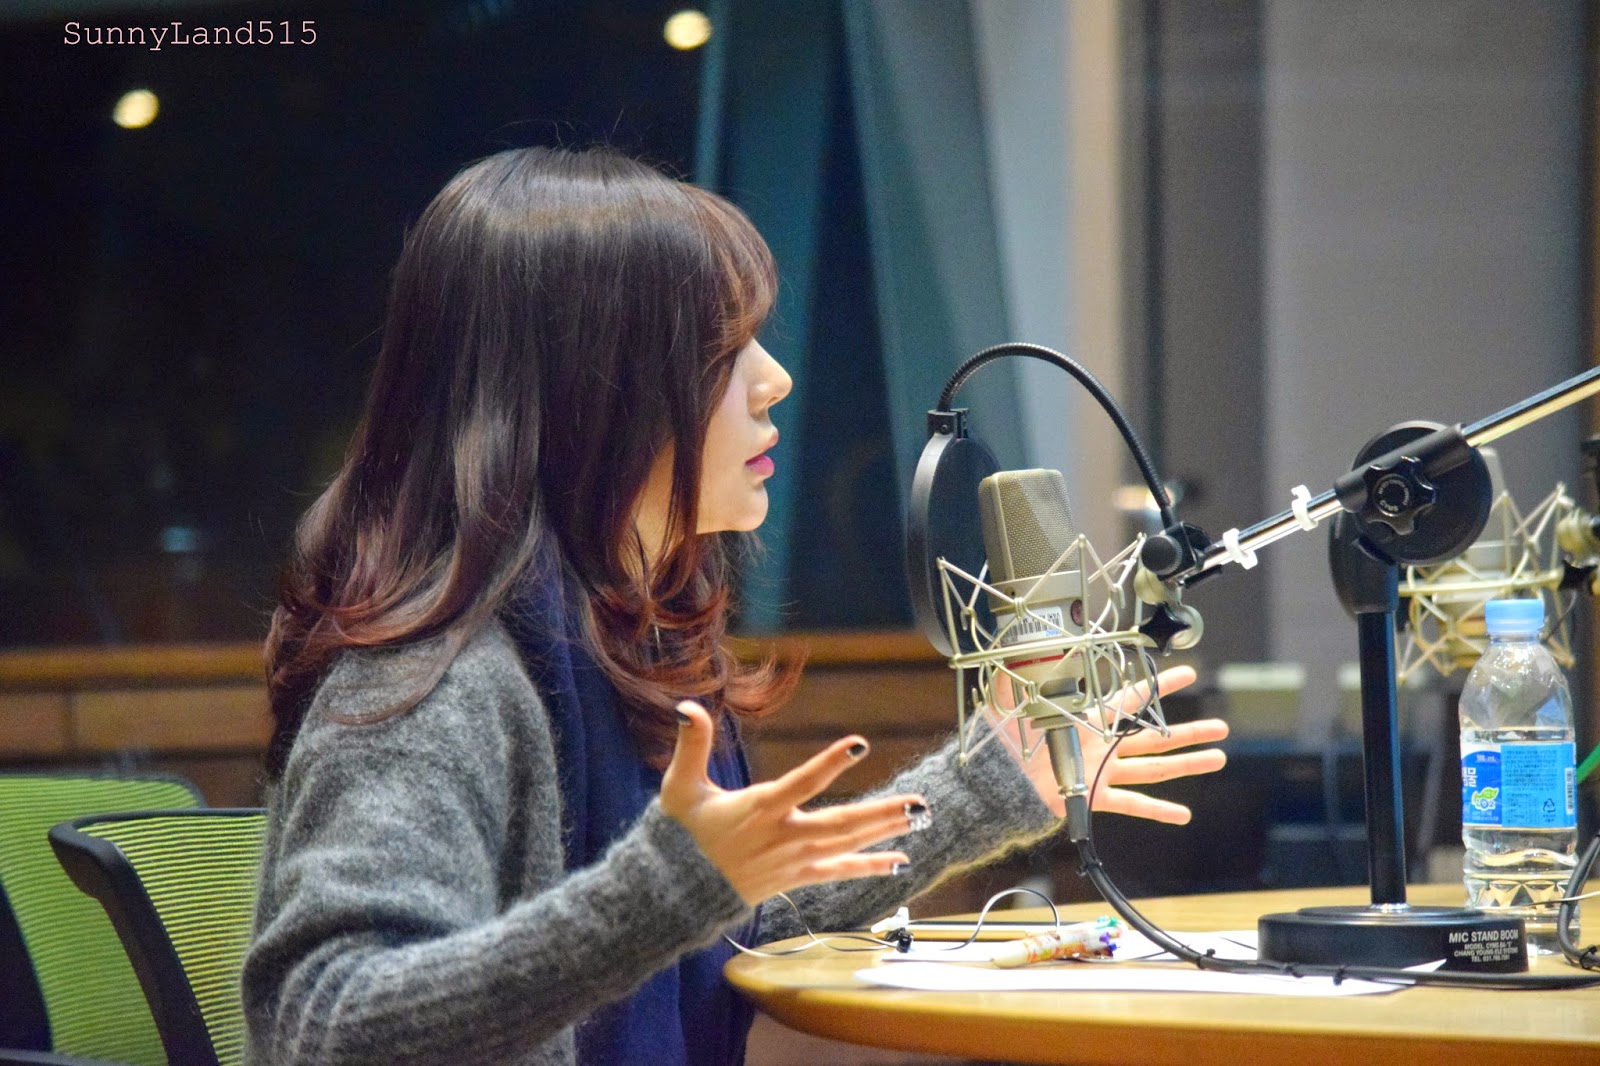 [OTHER][06-02-2015]Hình ảnh mới nhất từ DJ Sunny tại Radio MBC FM4U - "FM Date" - Page 10 DSC_0281_Fotor